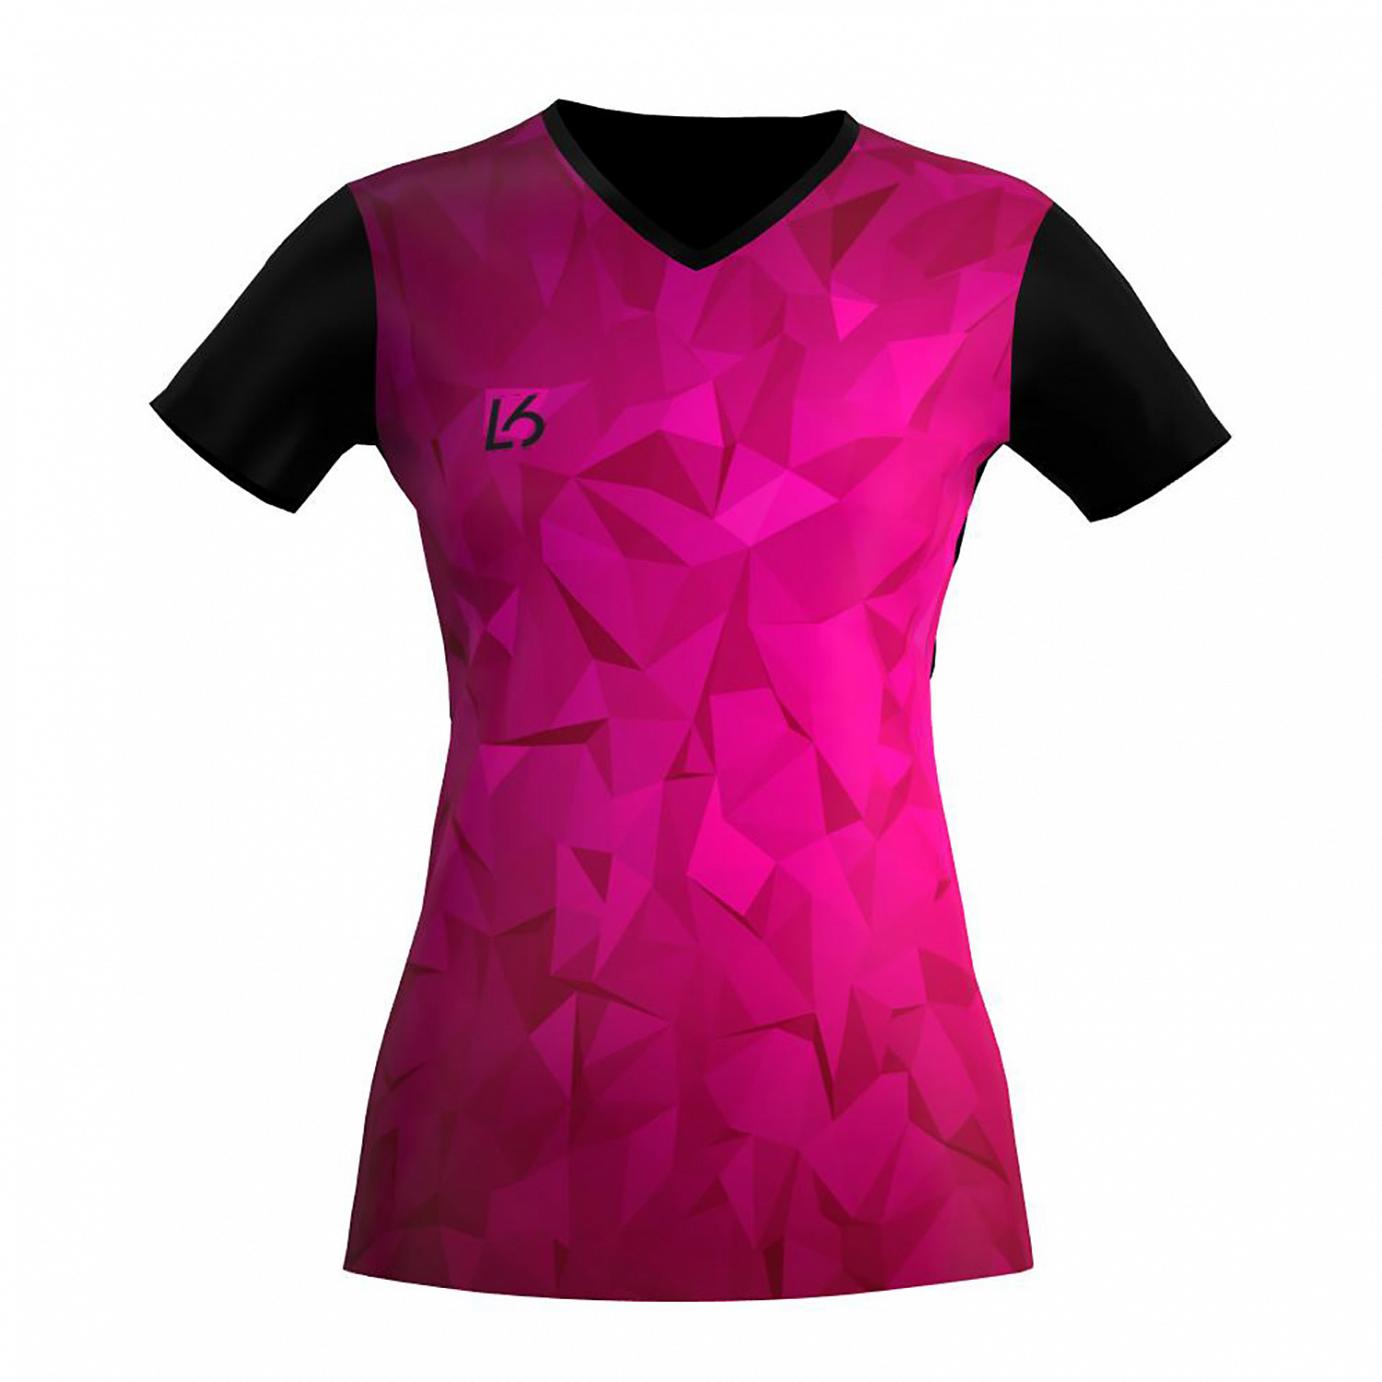 L6 V-Neck Trikot Women - Polygon Pink